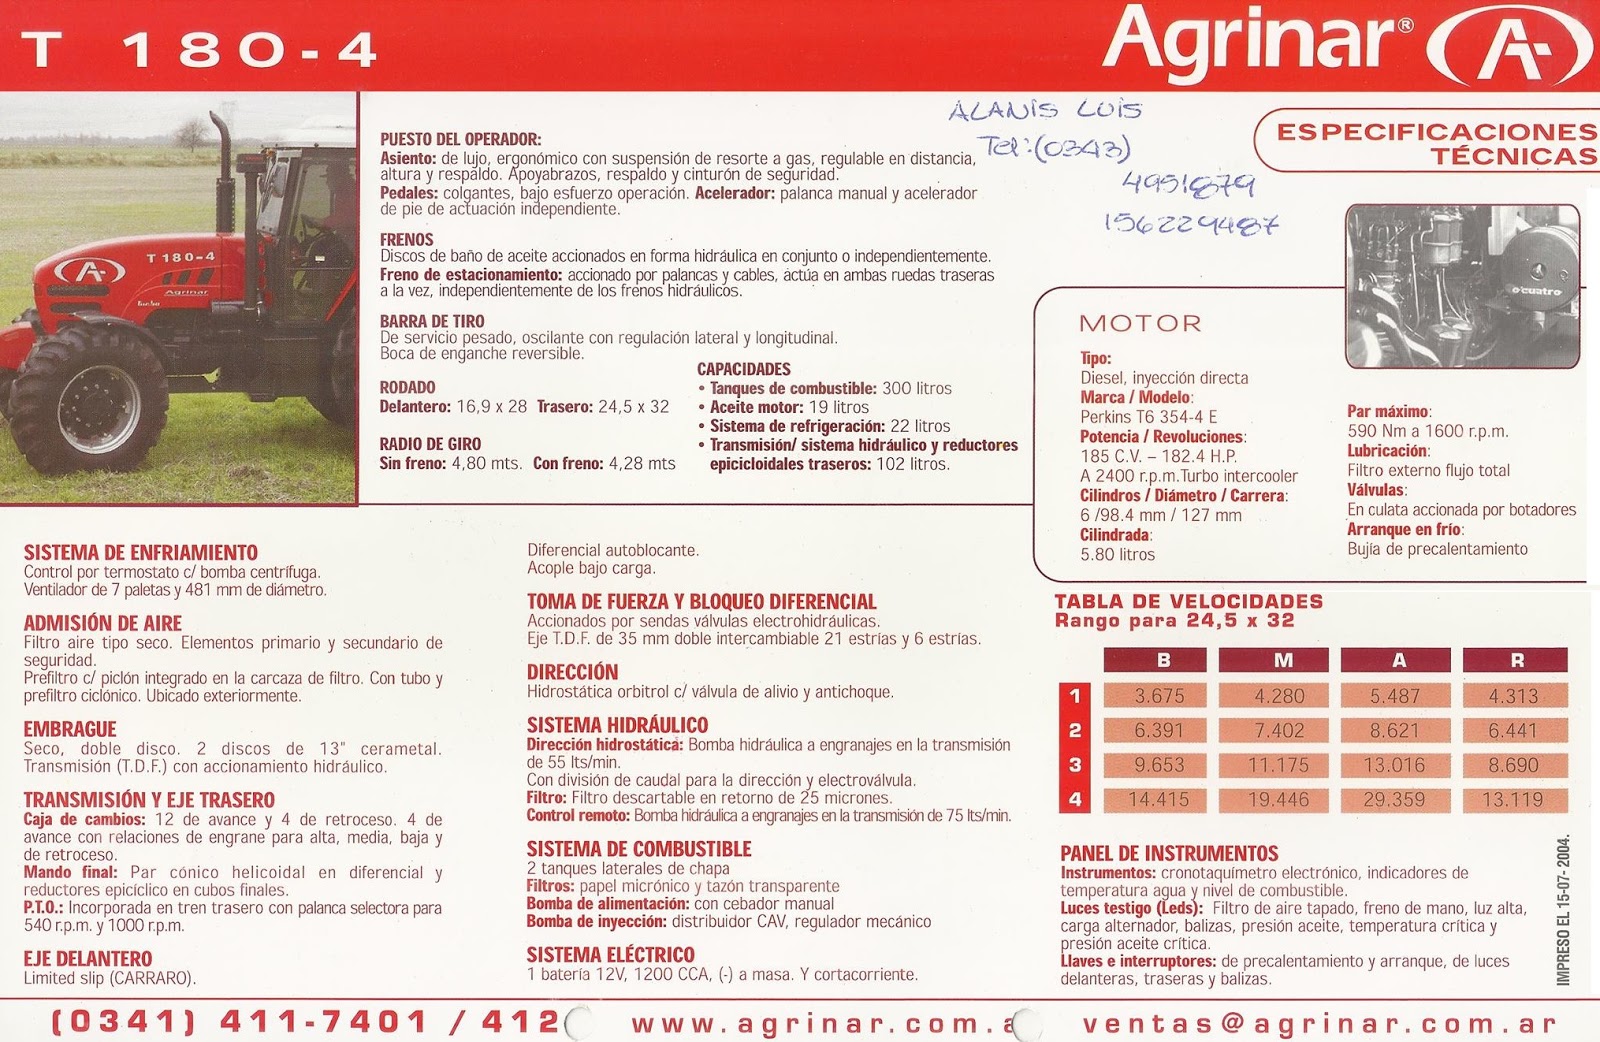 Pesados Argentinos: Agrinar T 180-4